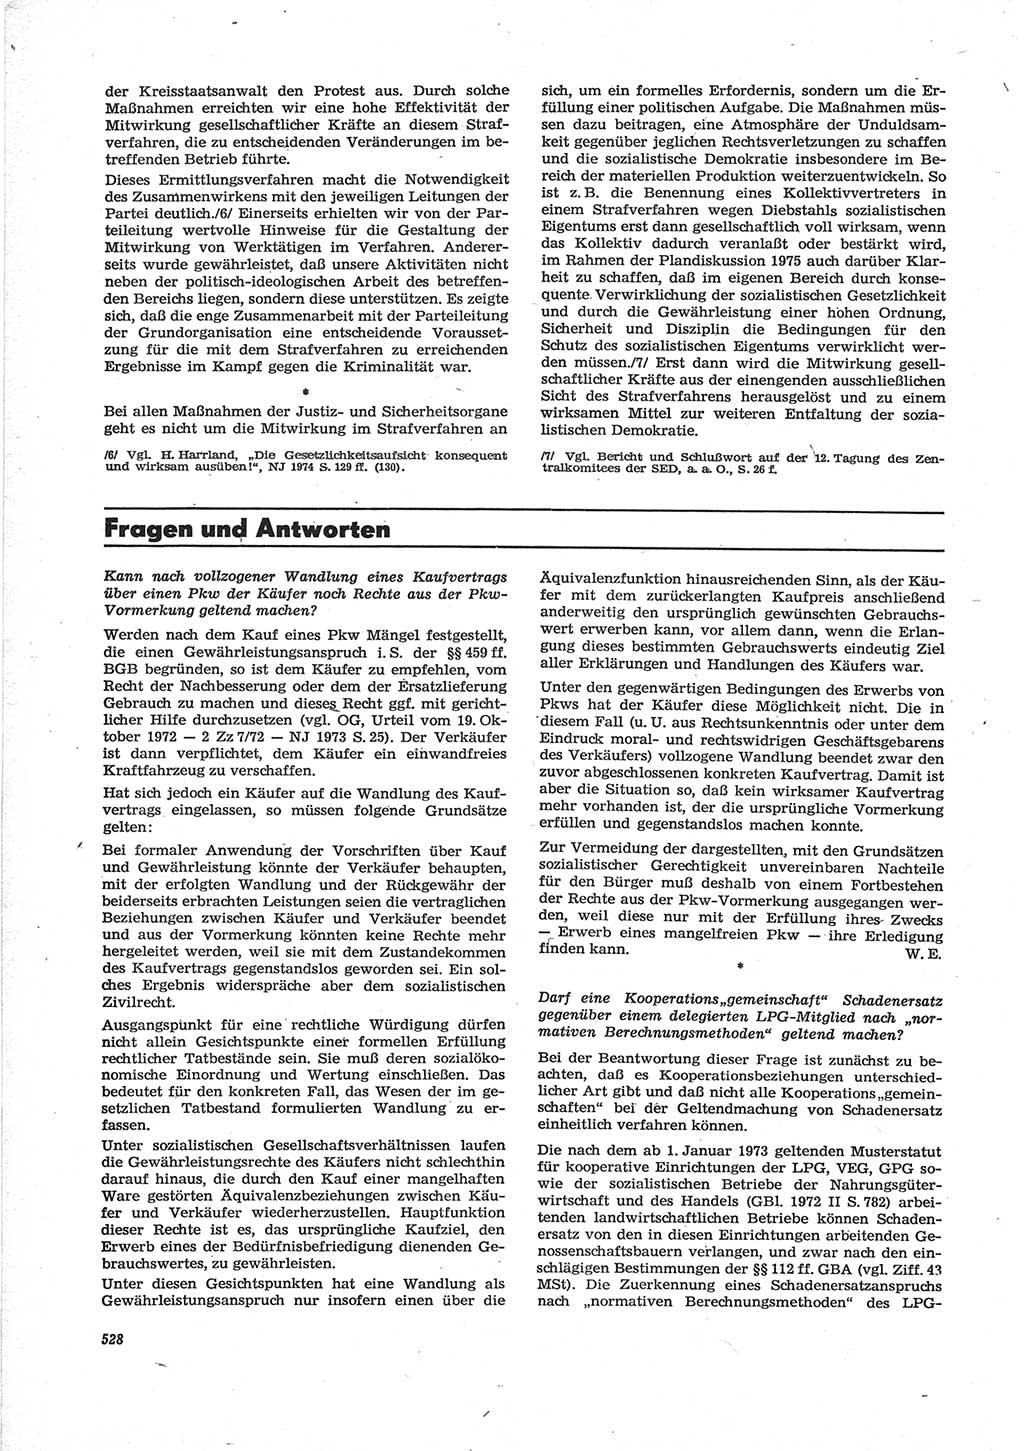 Neue Justiz (NJ), Zeitschrift für Recht und Rechtswissenschaft [Deutsche Demokratische Republik (DDR)], 28. Jahrgang 1974, Seite 528 (NJ DDR 1974, S. 528)